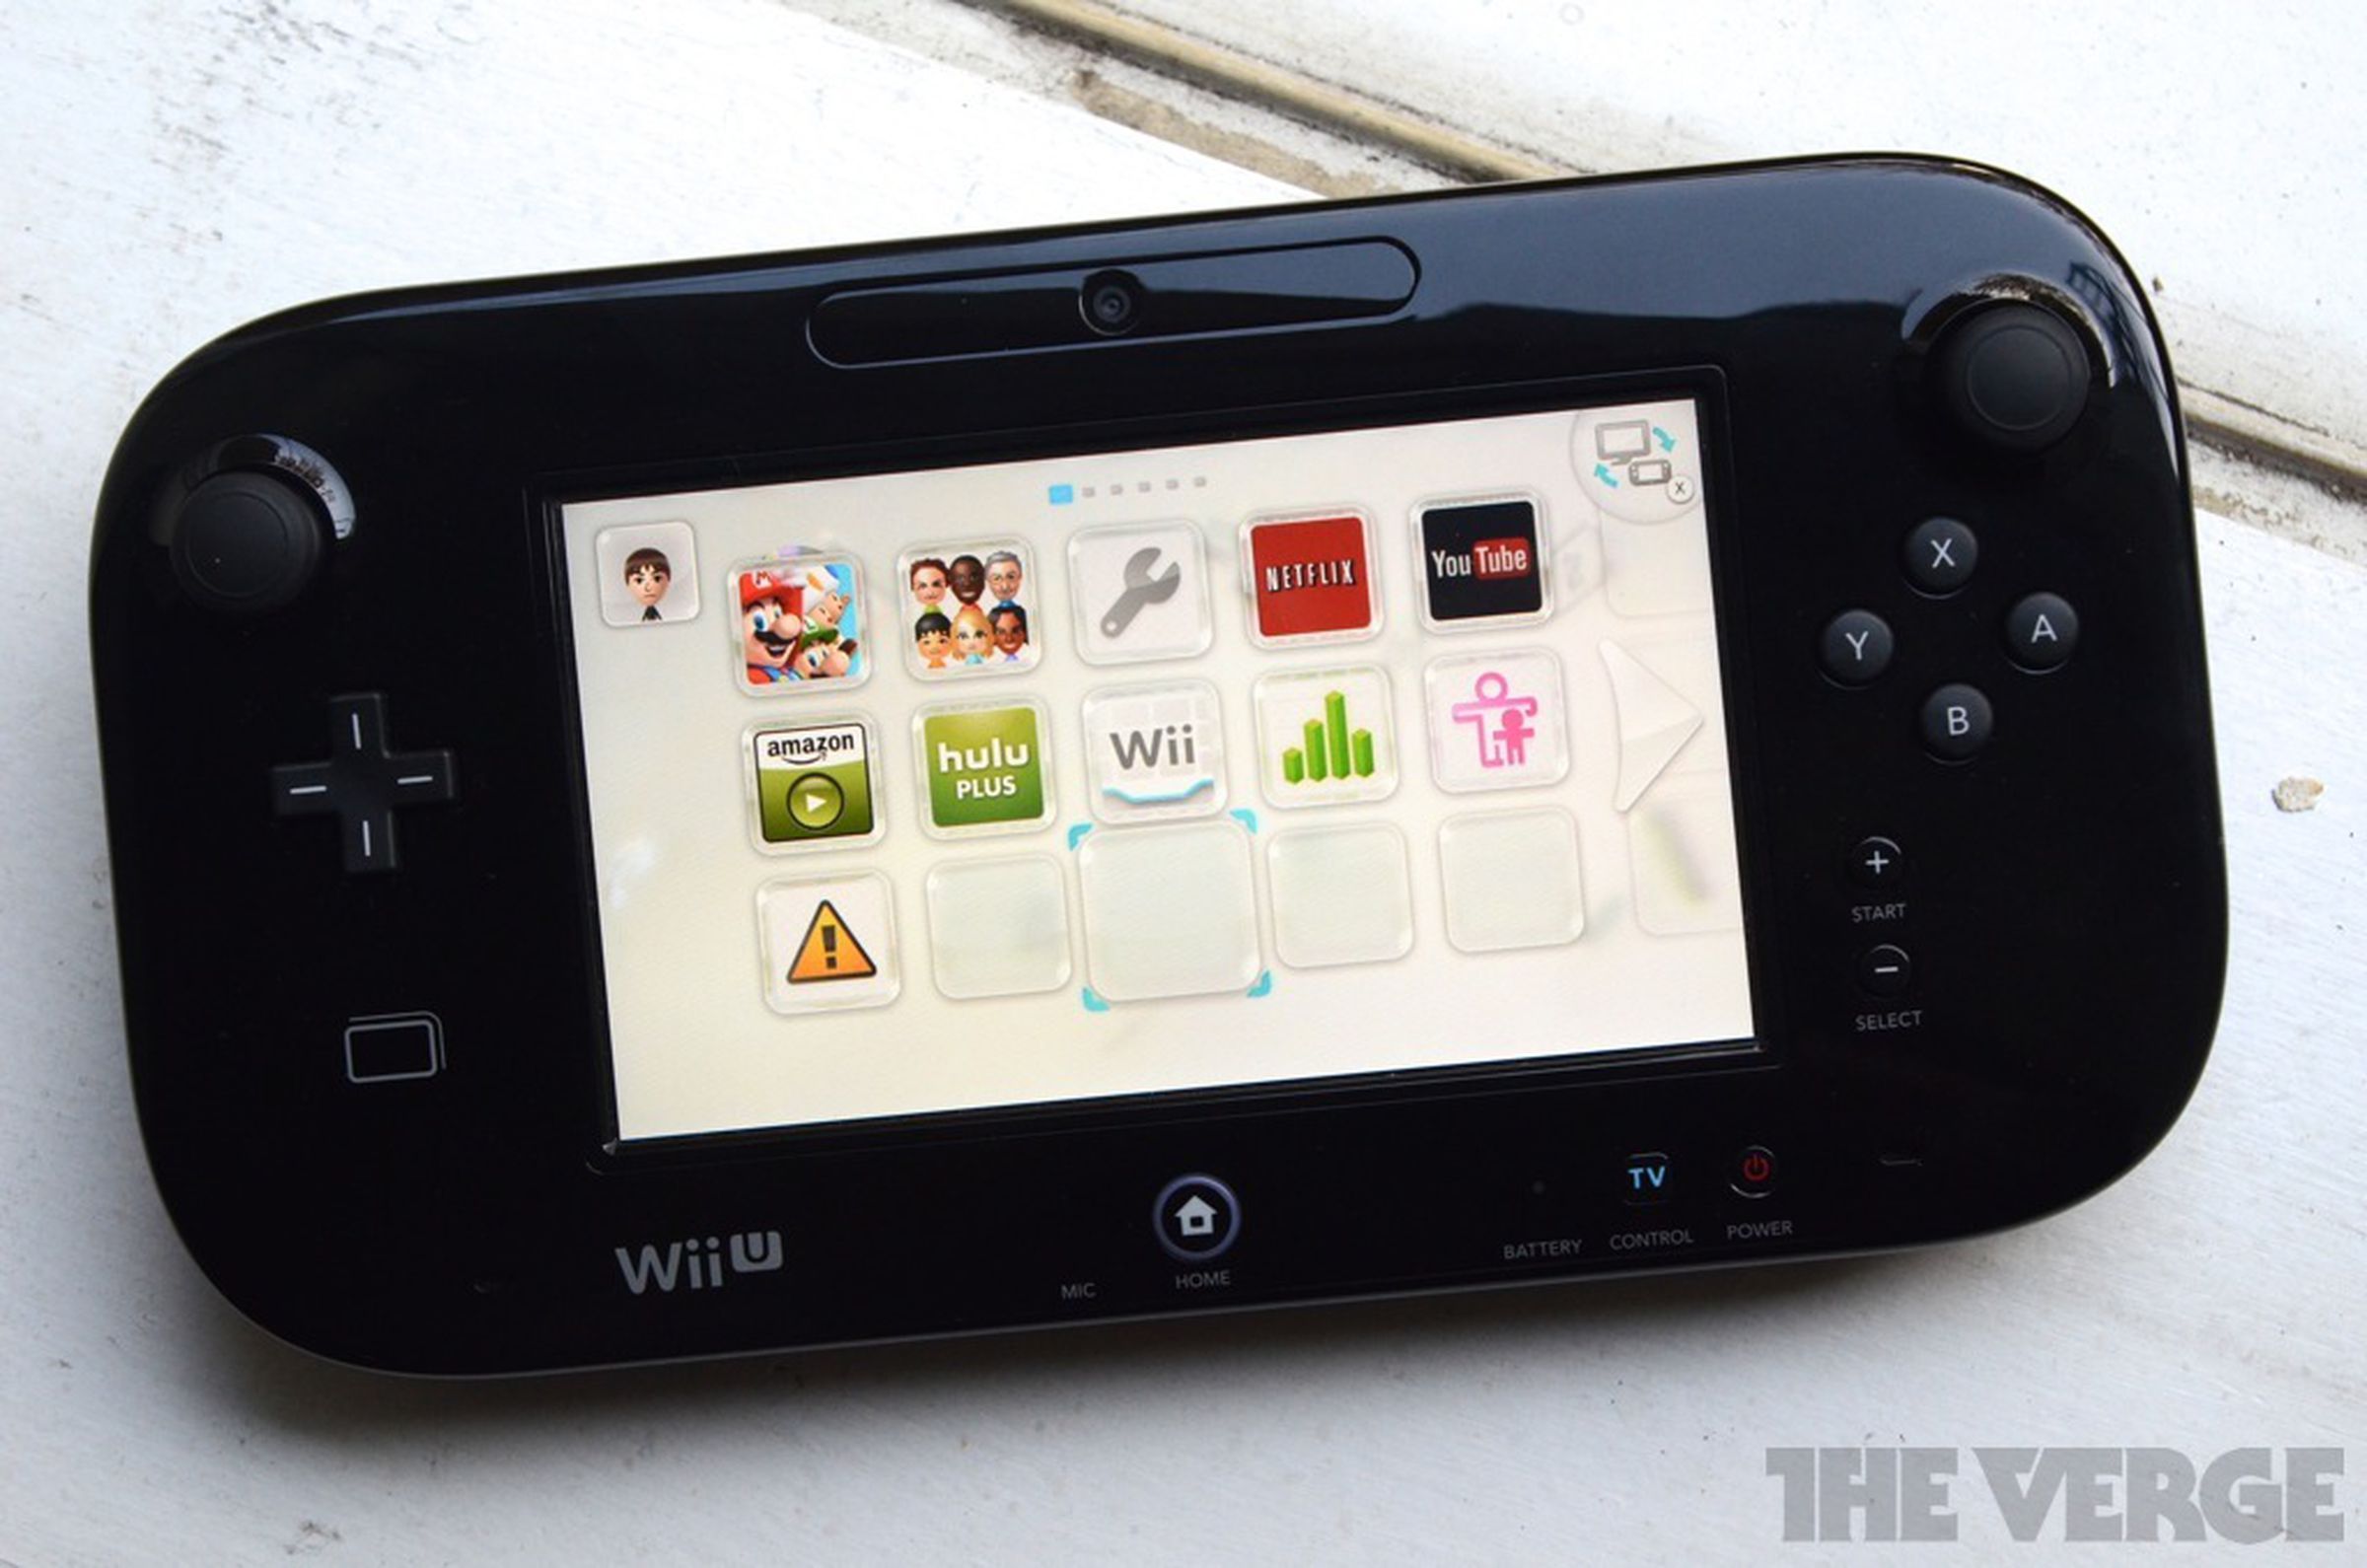 Nintendo Wii U hands-on pictures